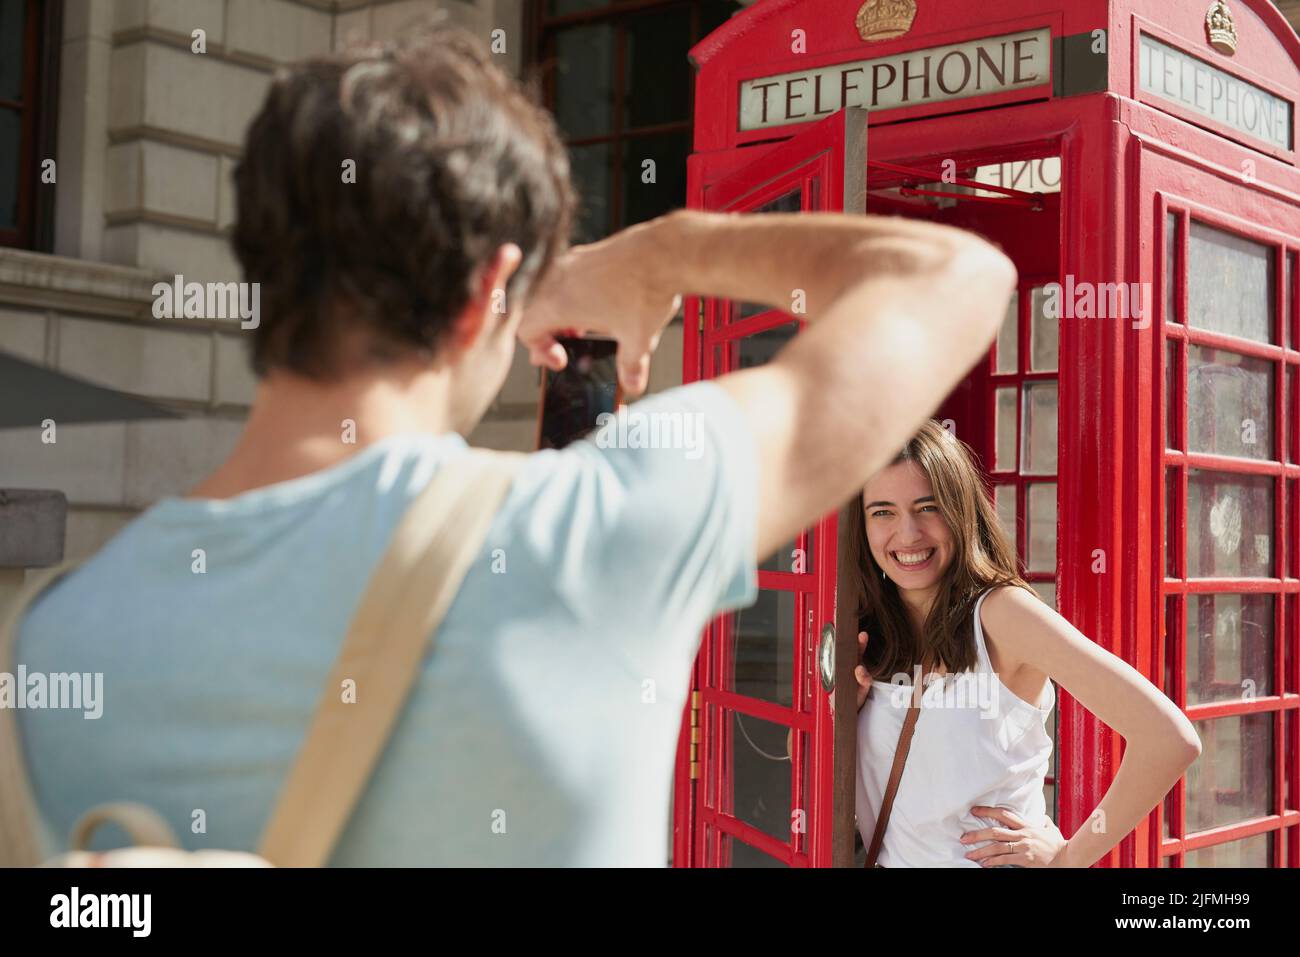 Du bist offiziell in London, wenn du eines davon siehst. Aufnahme eines jungen Mannes, der während der Aufnahme Fotos von seiner Freundin mit dem Smartphone in einer Telefonzelle machte Stockfoto